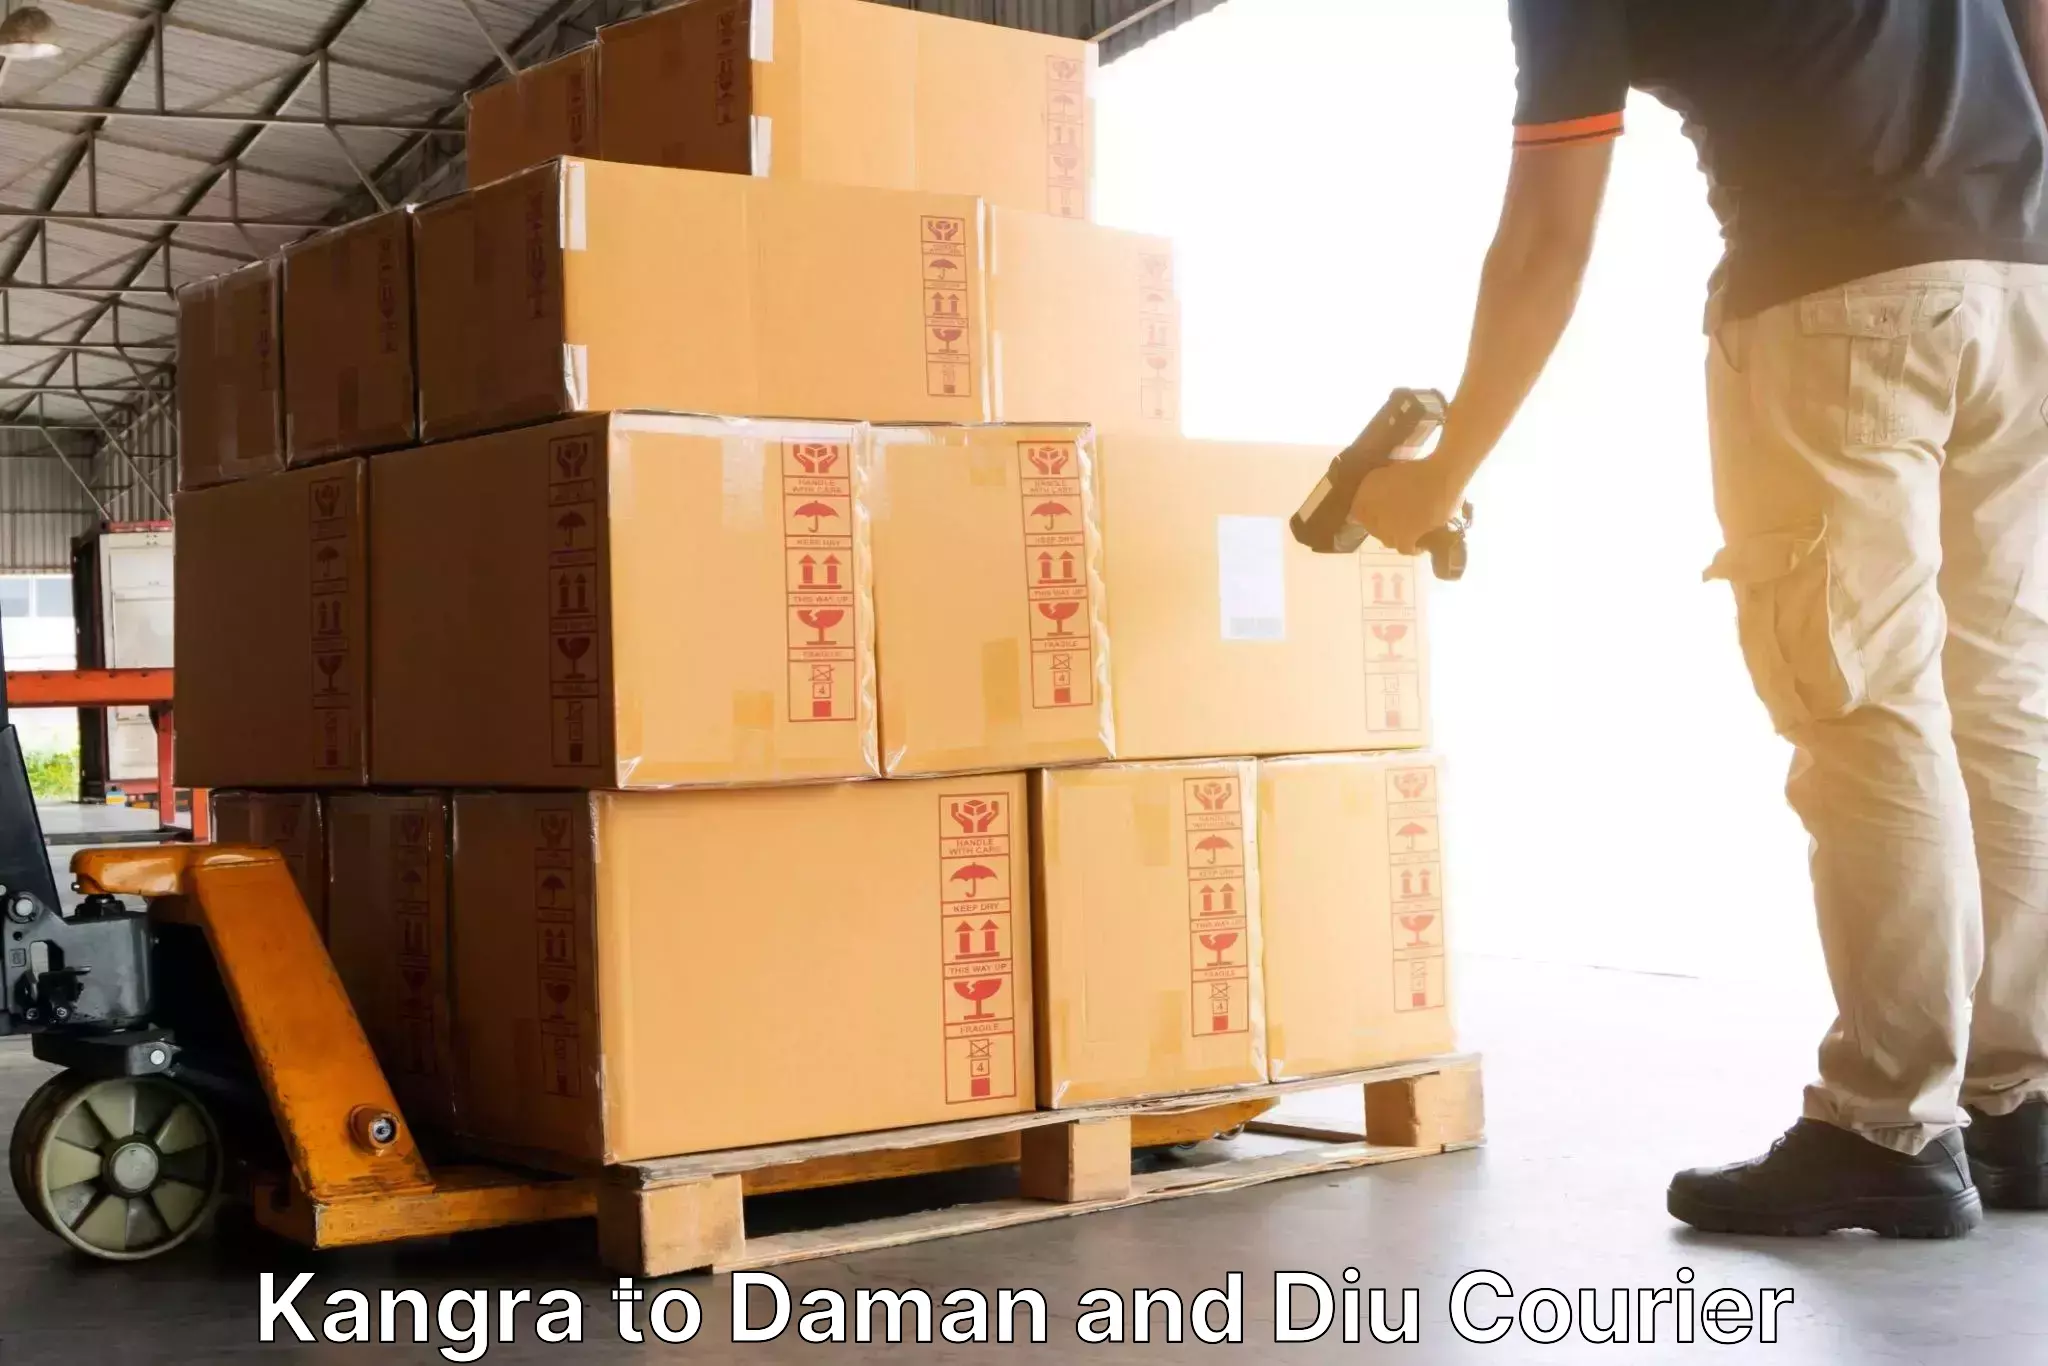 Logistics service provider Kangra to Daman